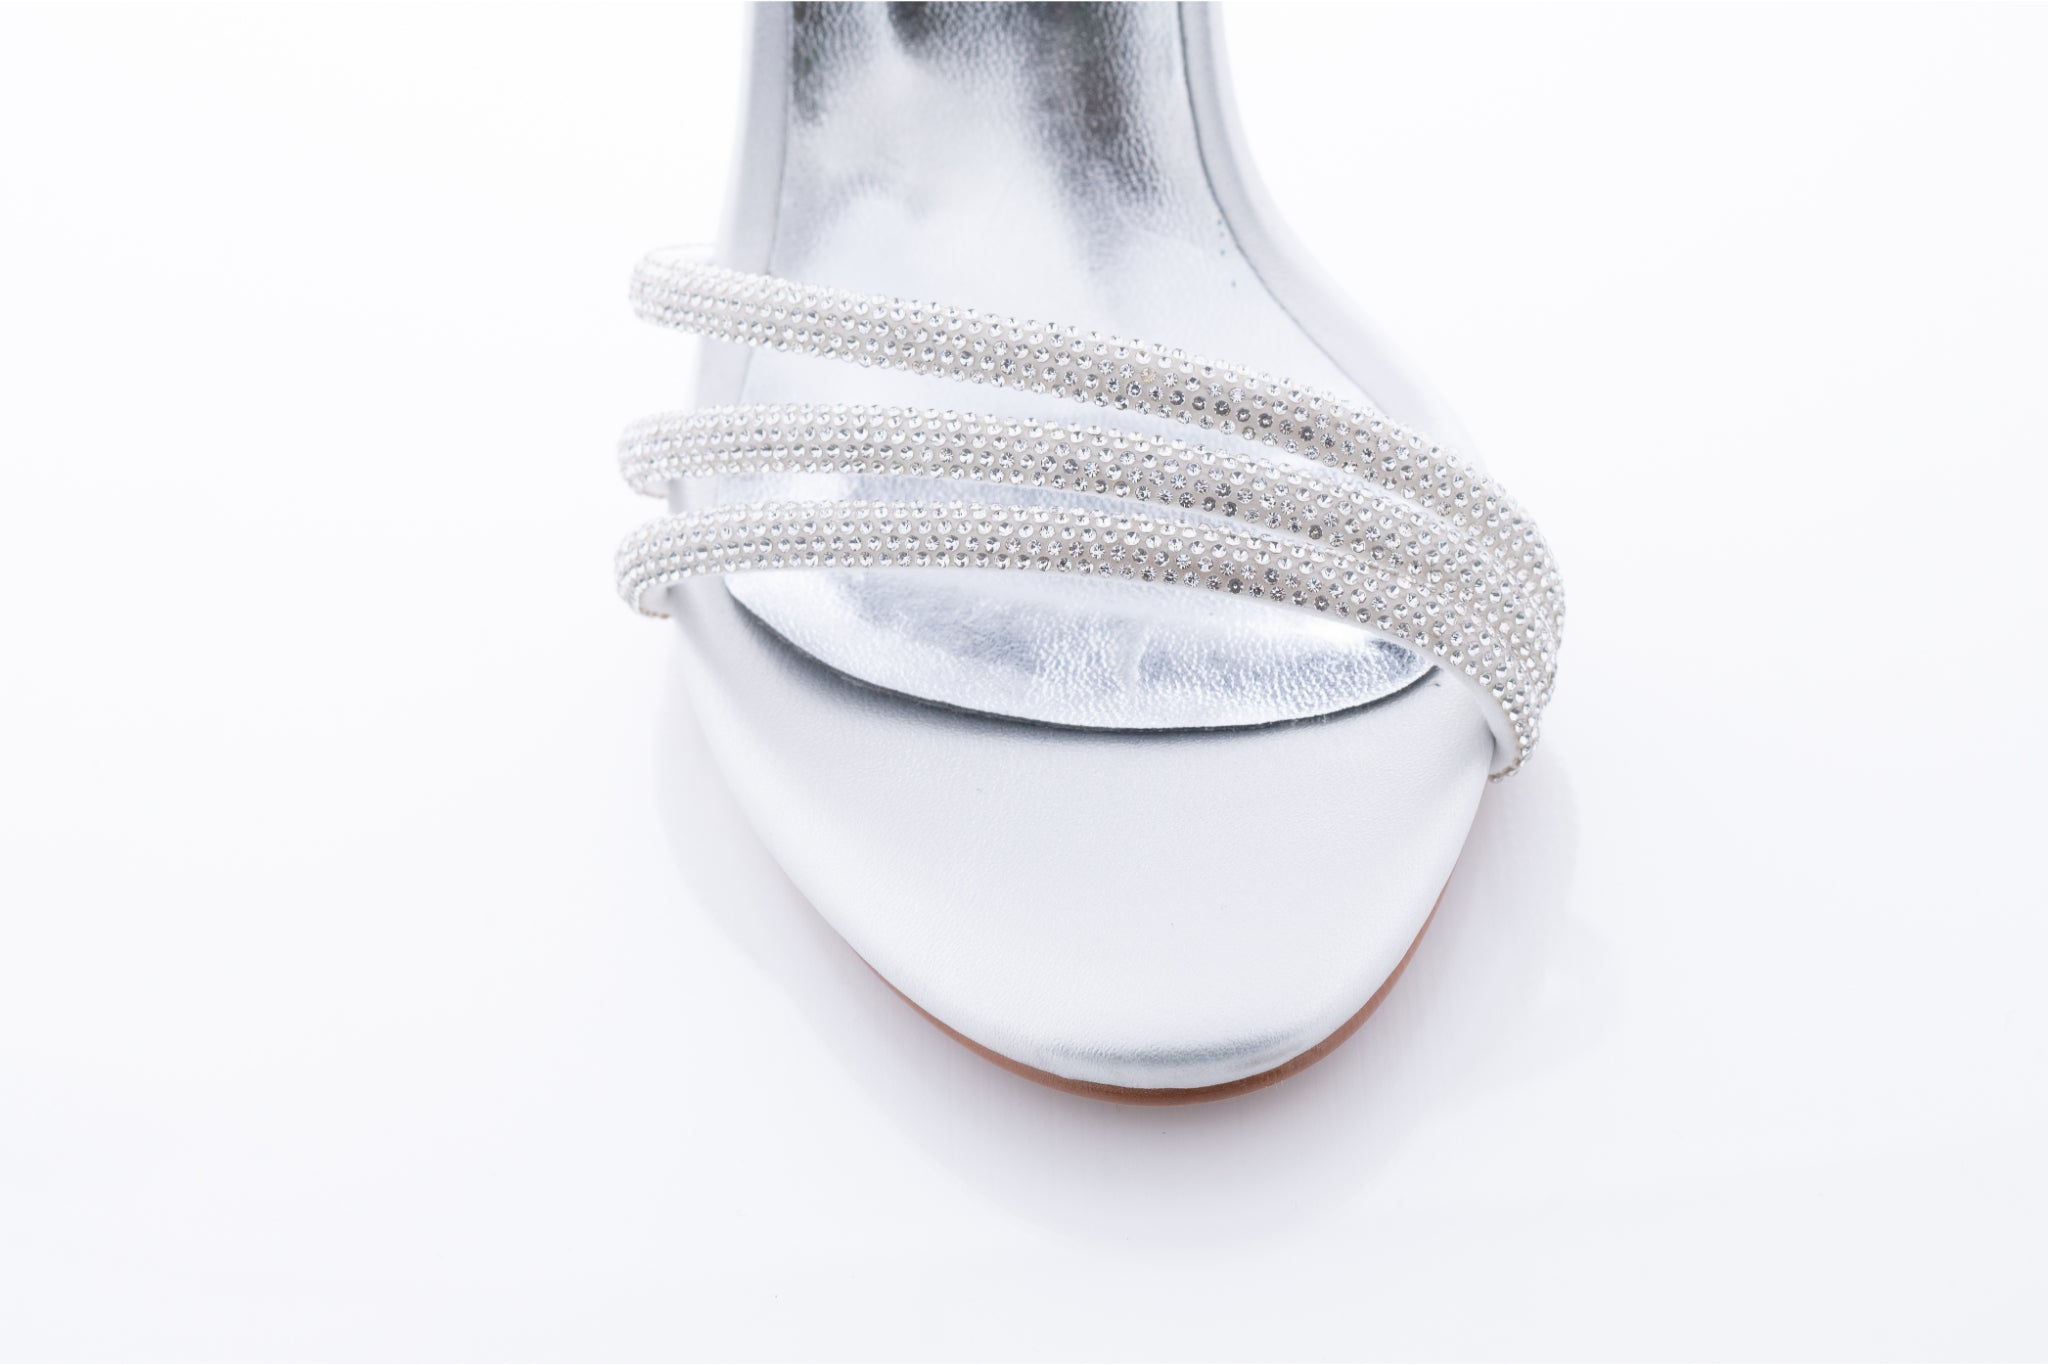 Sandale dama casual piele ecologica 6700 argintiu